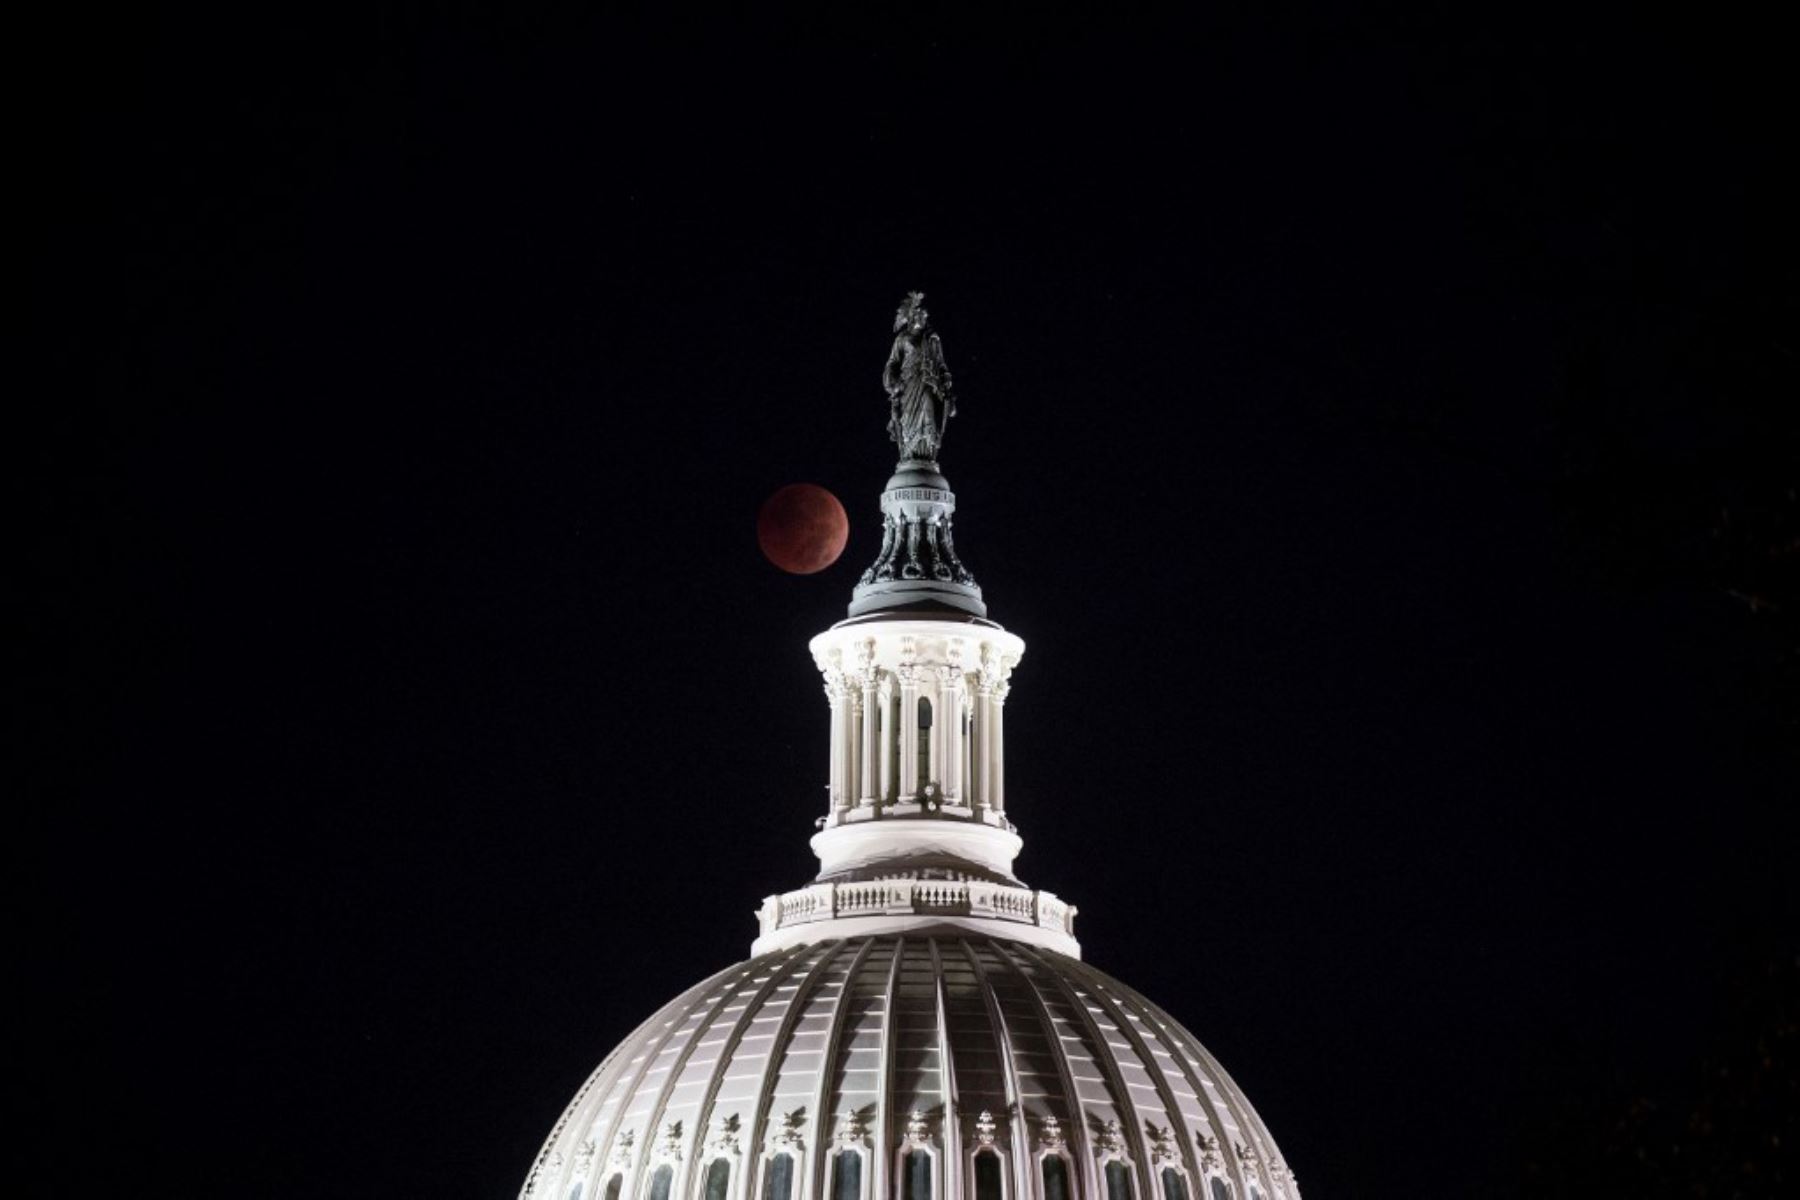 La Luna se pone durante un eclipse lunar total detrás de la Estatua de la Libertad en la parte superior de la cúpula del Capitolio de EE. UU. Foto: AFP